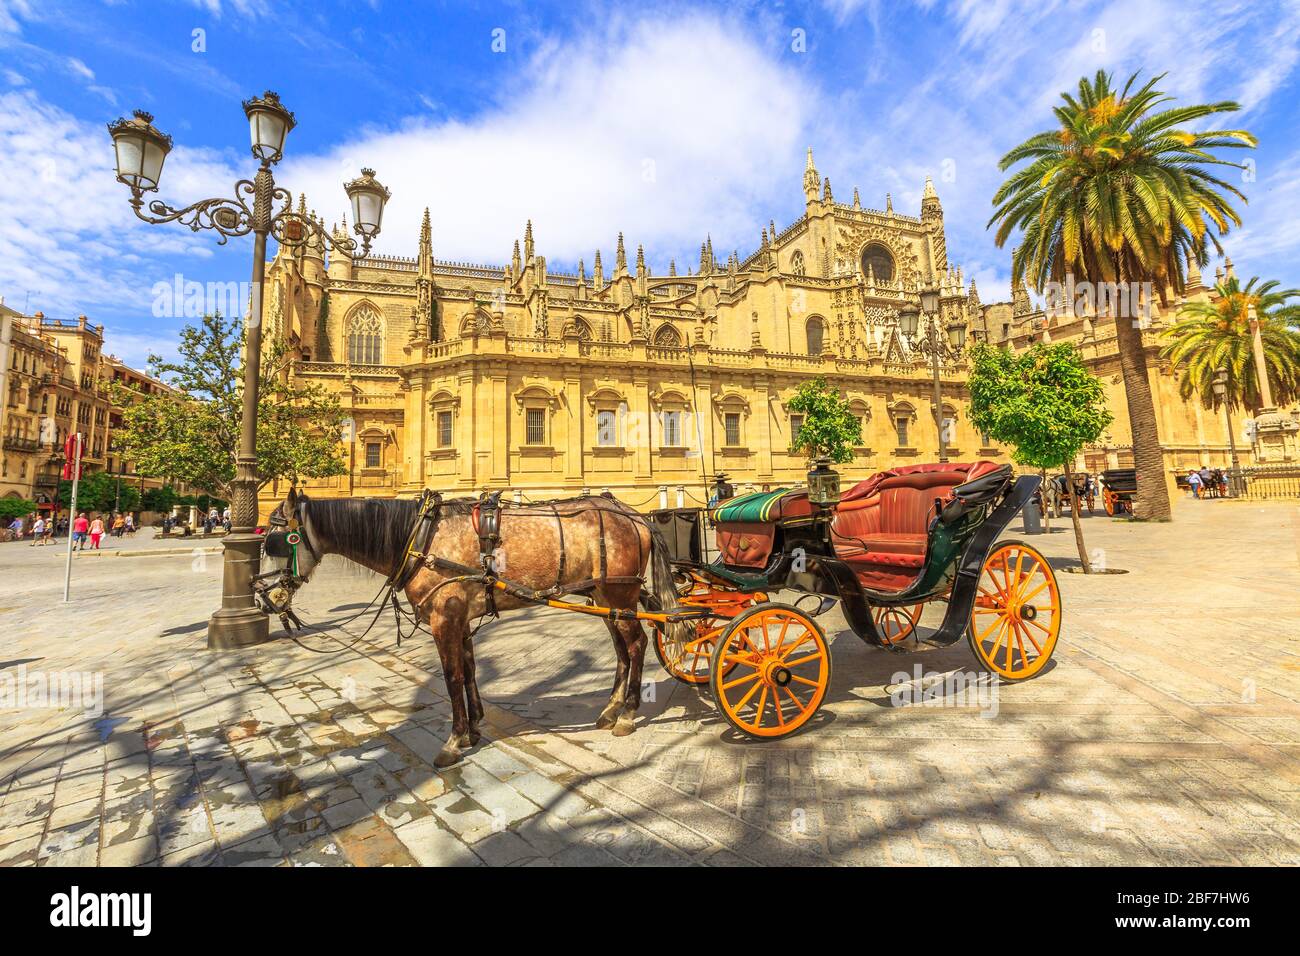 Il cavallo spagnolo parcheggiato di fronte alla Cattedrale di Siviglia, una cattedrale cattolica romana e la più grande chiesa gotica, è una delle attrazioni turistiche di Foto Stock